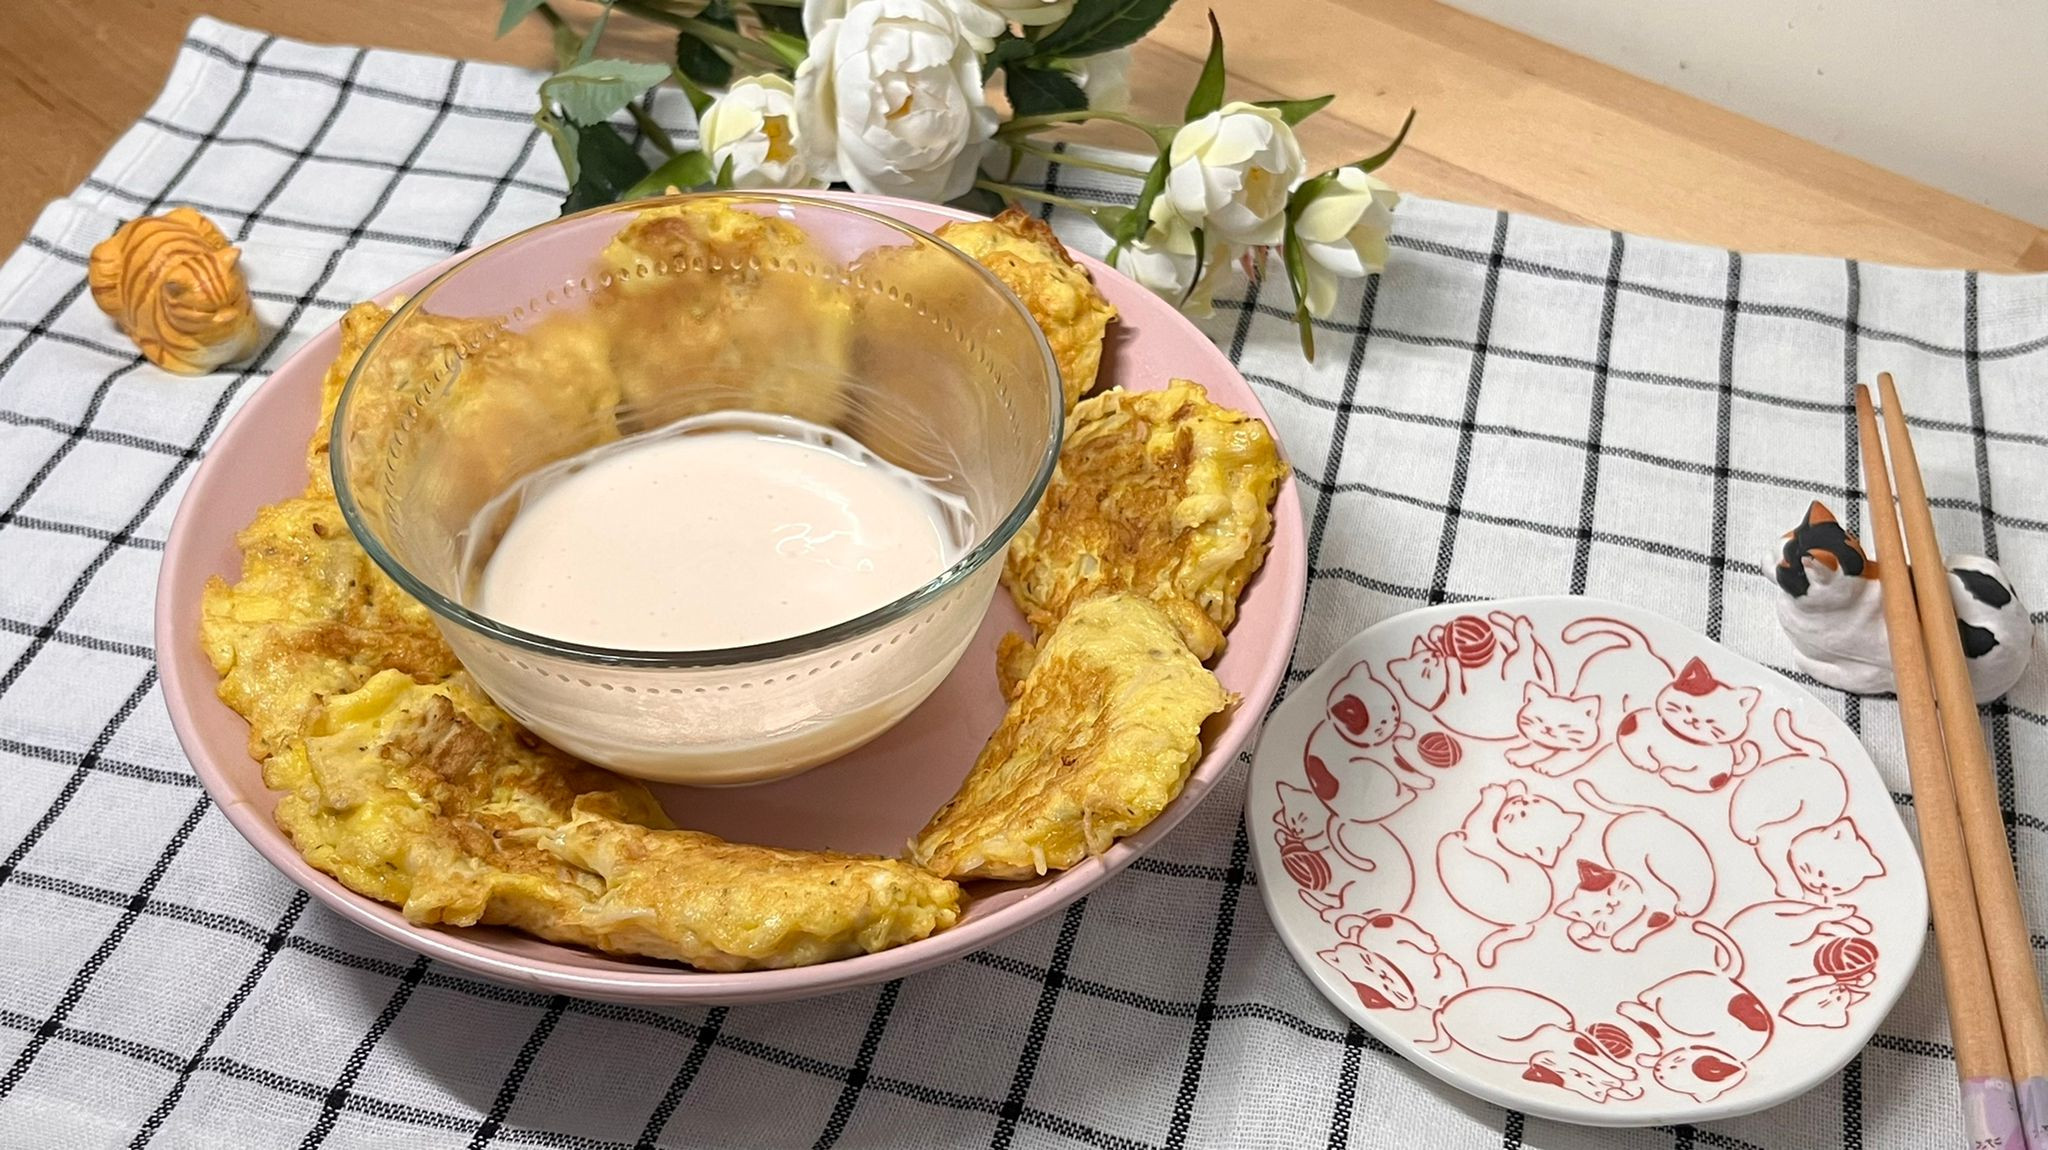 西式香草煎蛋餅配自製千島醬 (蛋奶素)